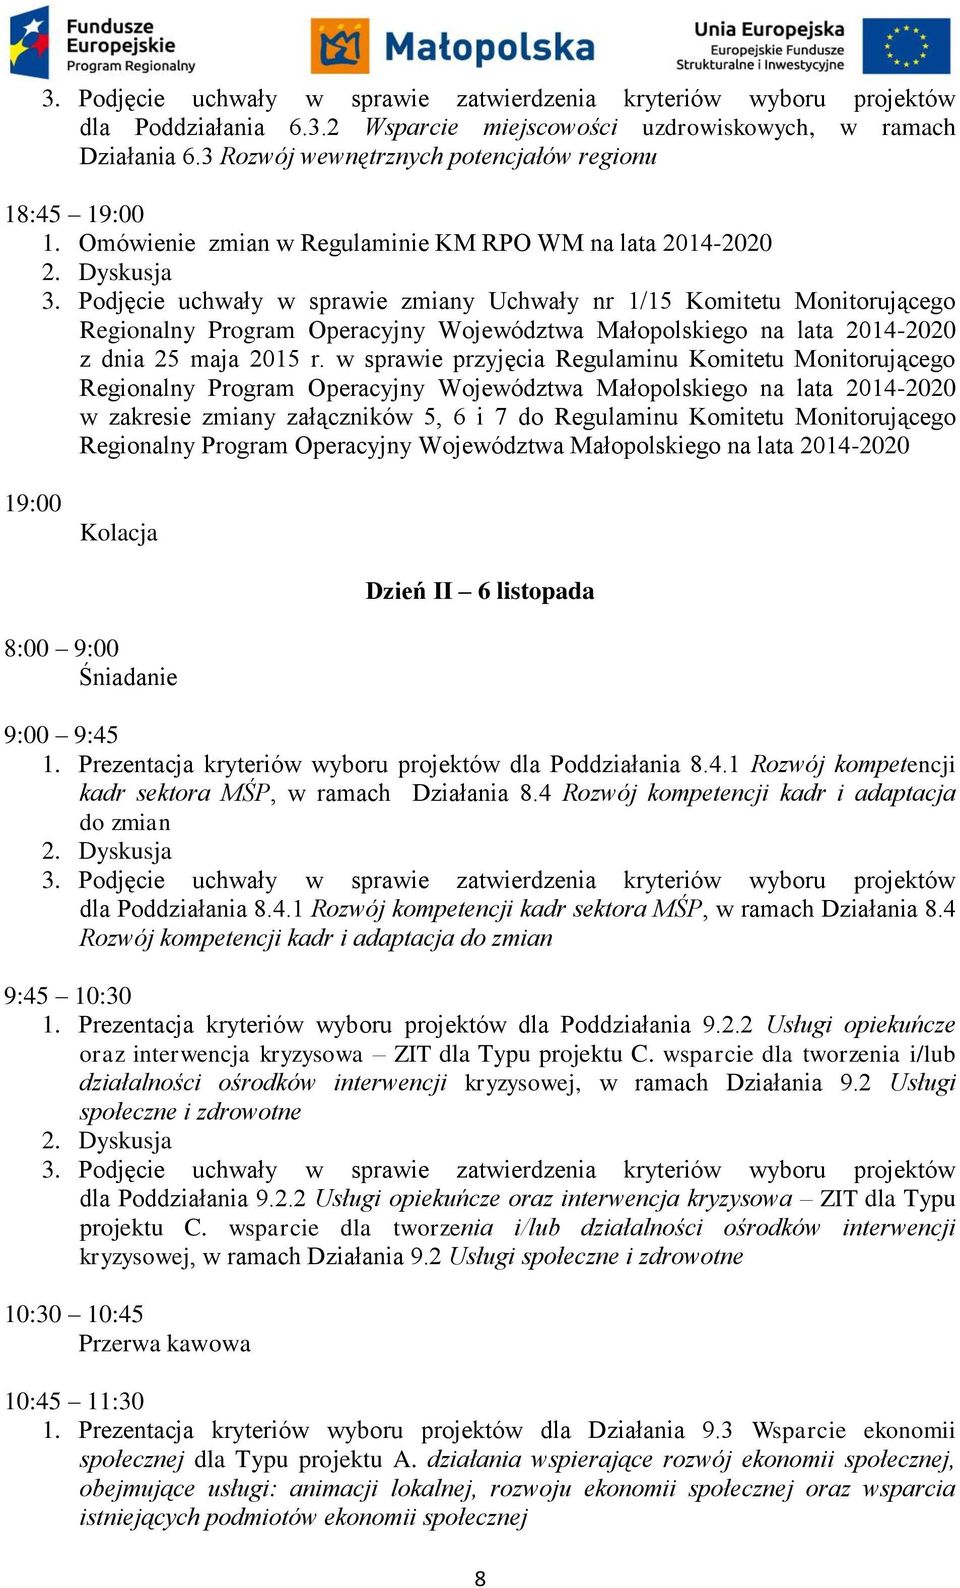 Podjęcie uchwały w sprawie zmiany Uchwały nr 1/15 Komitetu Monitorującego Regionalny Program Operacyjny Województwa Małopolskiego na lata 2014-2020 z dnia 25 maja 2015 r.